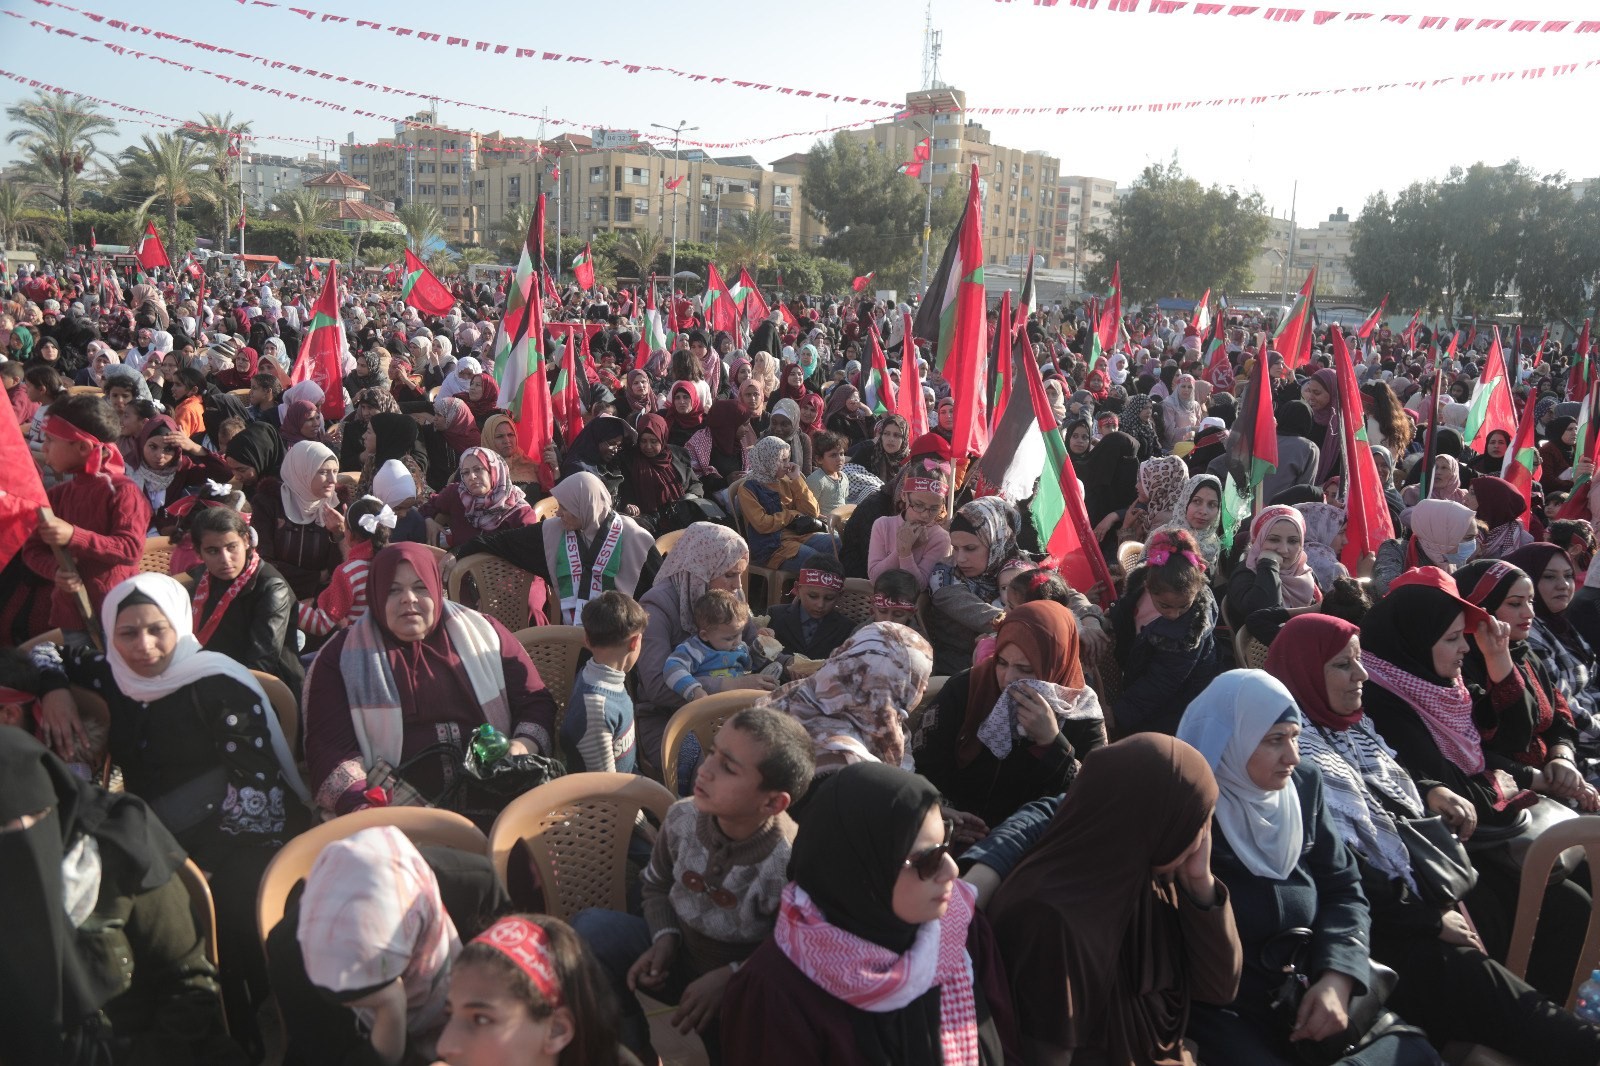 عشرات الآلاف يُشاركون في المهرجان الوطني (انطلاقتنا مقاومة) في ساحة الكتيبة بمدينة غزة لإحياء ذكرى انطلاقة الجبهة الشعبيّة لتحرير فلسطين الـ55. 33.jpg